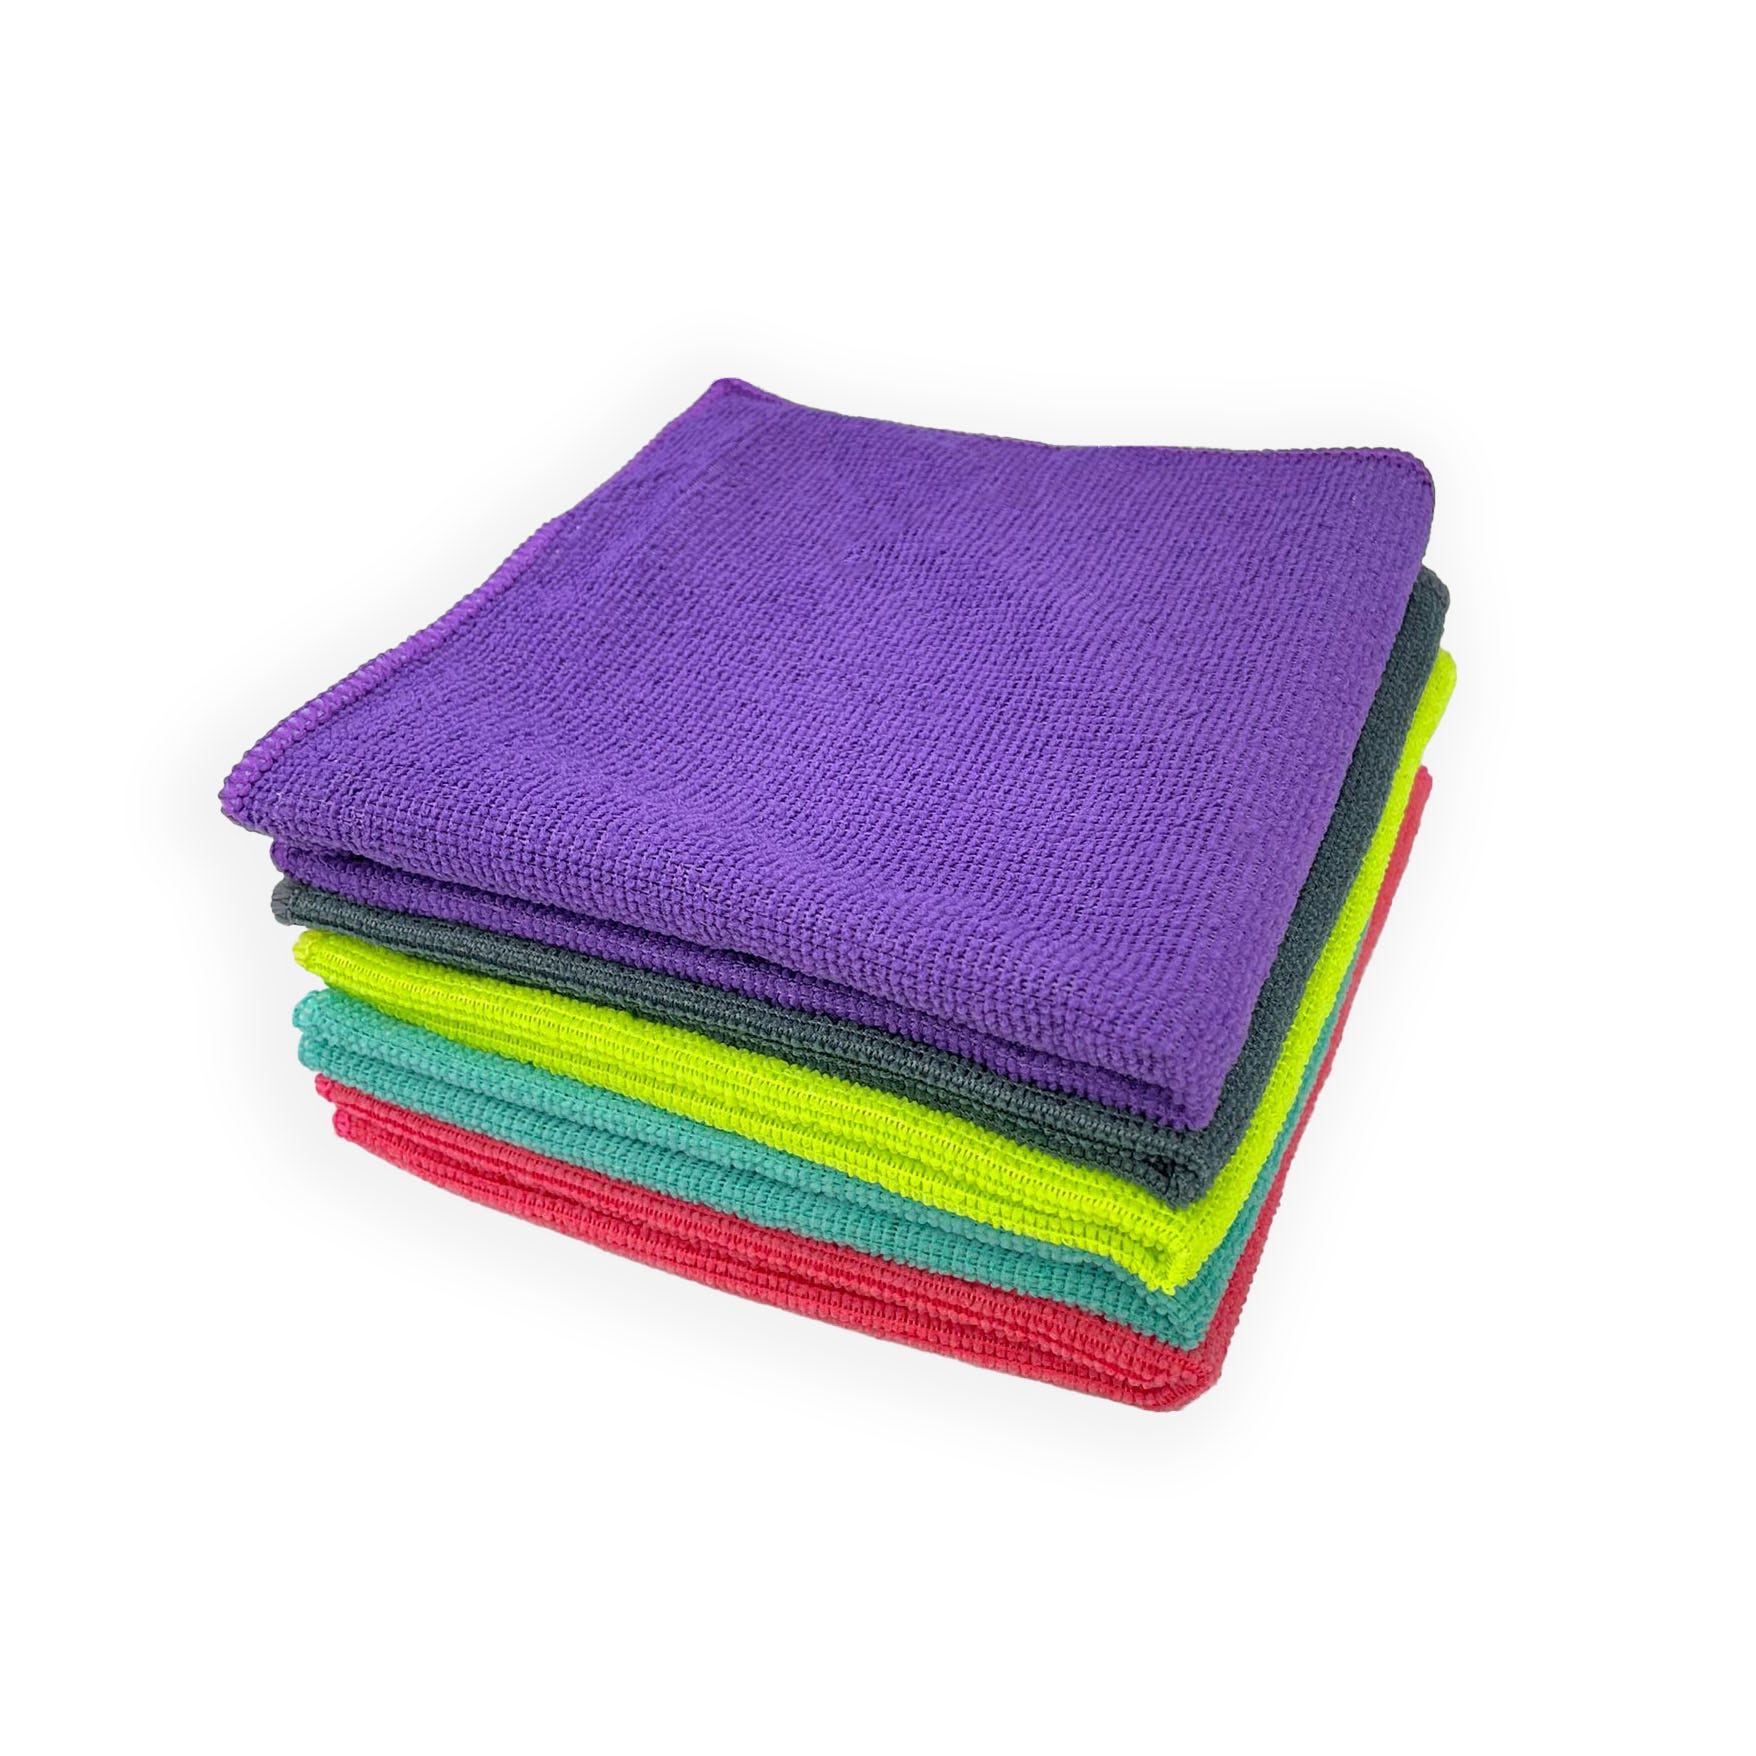 Acomoda Textil – Bayetas de Microfibra 38x38 cm. Toallas Absorbentes,  Suaves y Resistentes para Limpieza. (10 unidades)